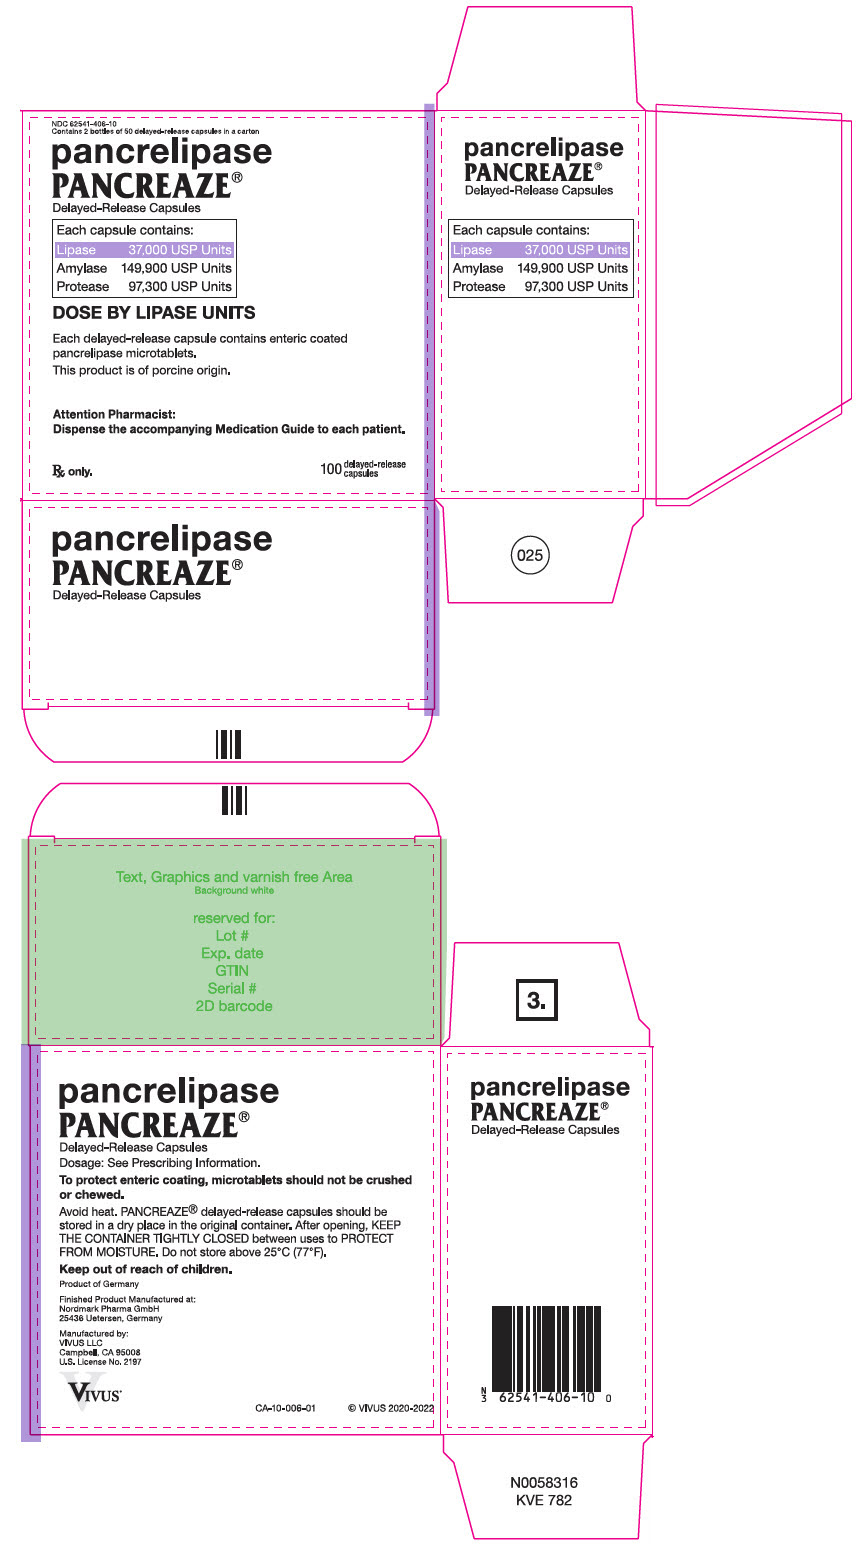 PRINCIPAL DISPLAY PANEL - 100 Capsule Bottle Carton - NDC 62541-406-10